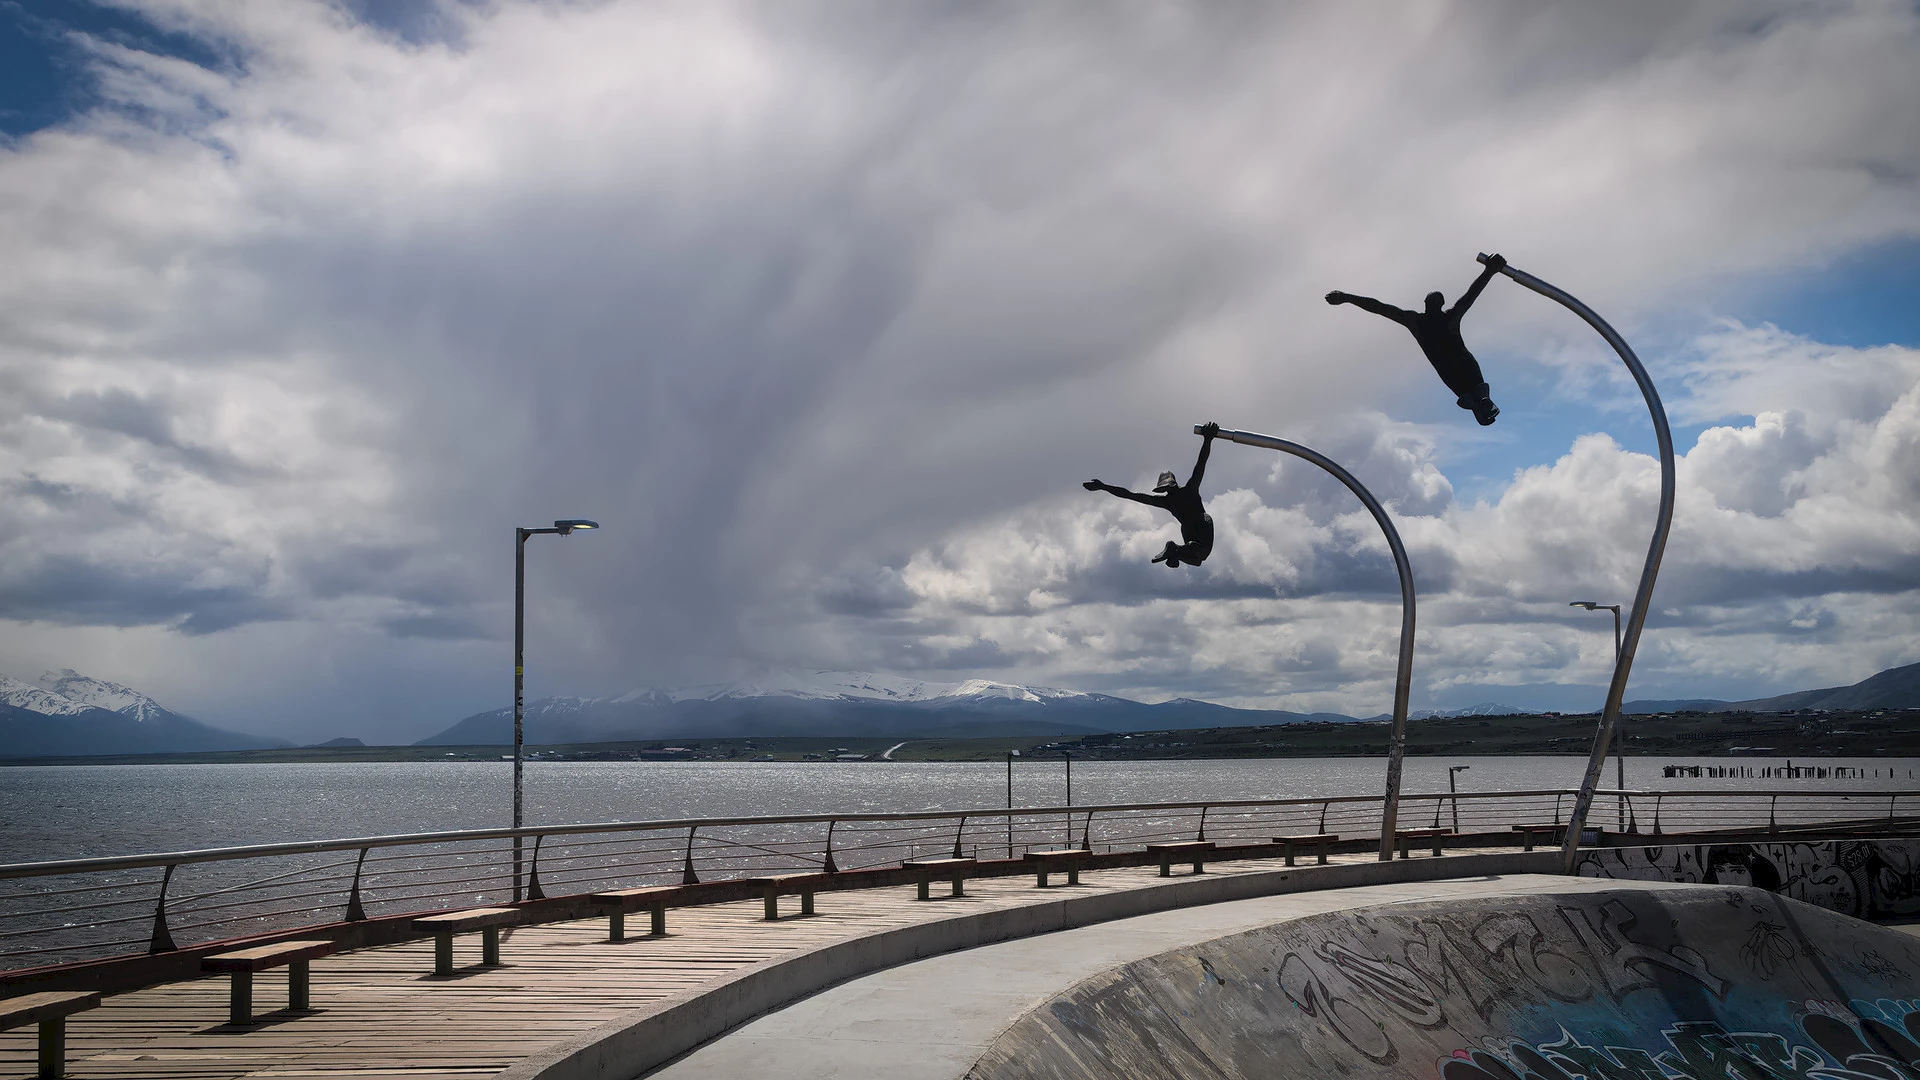 Статуя "Памятник ветру" на берегу в Пуэрто-Наталесе